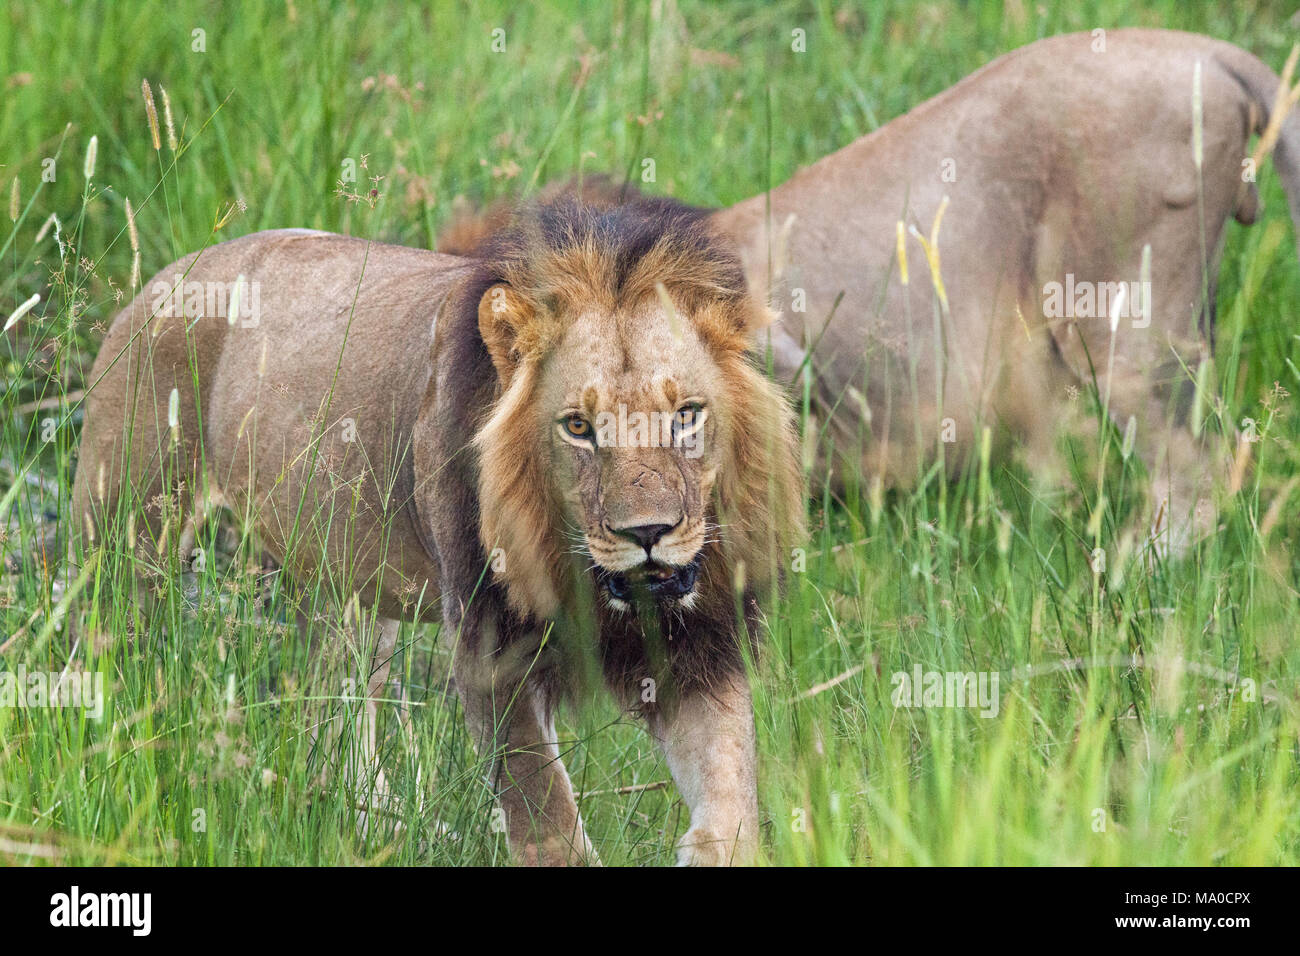 Les lions (Panthera leo). En passant par la zone de savane humide de prairie. Derrière l'animal de boire. Les mâles adultes. Okavango. Le Botswana. L'Afrique. Banque D'Images